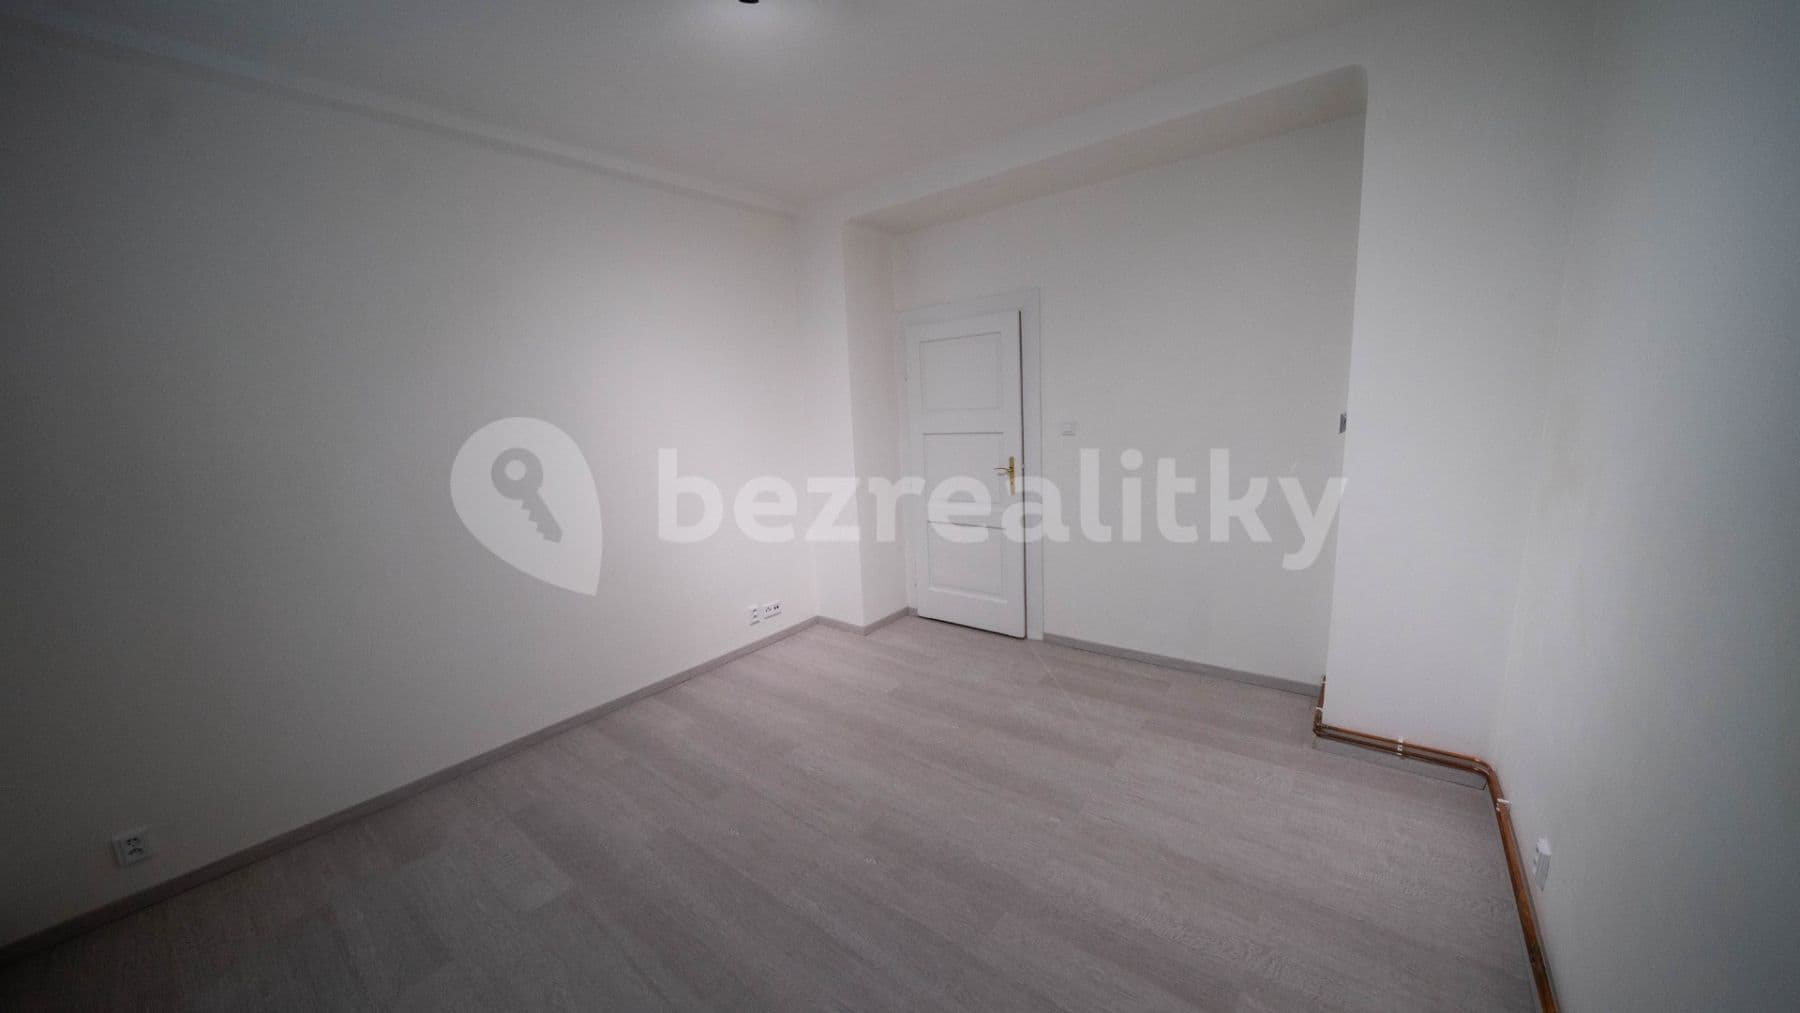 1 bedroom with open-plan kitchen flat to rent, 52 m², Vítězné náměstí, Prague, Prague